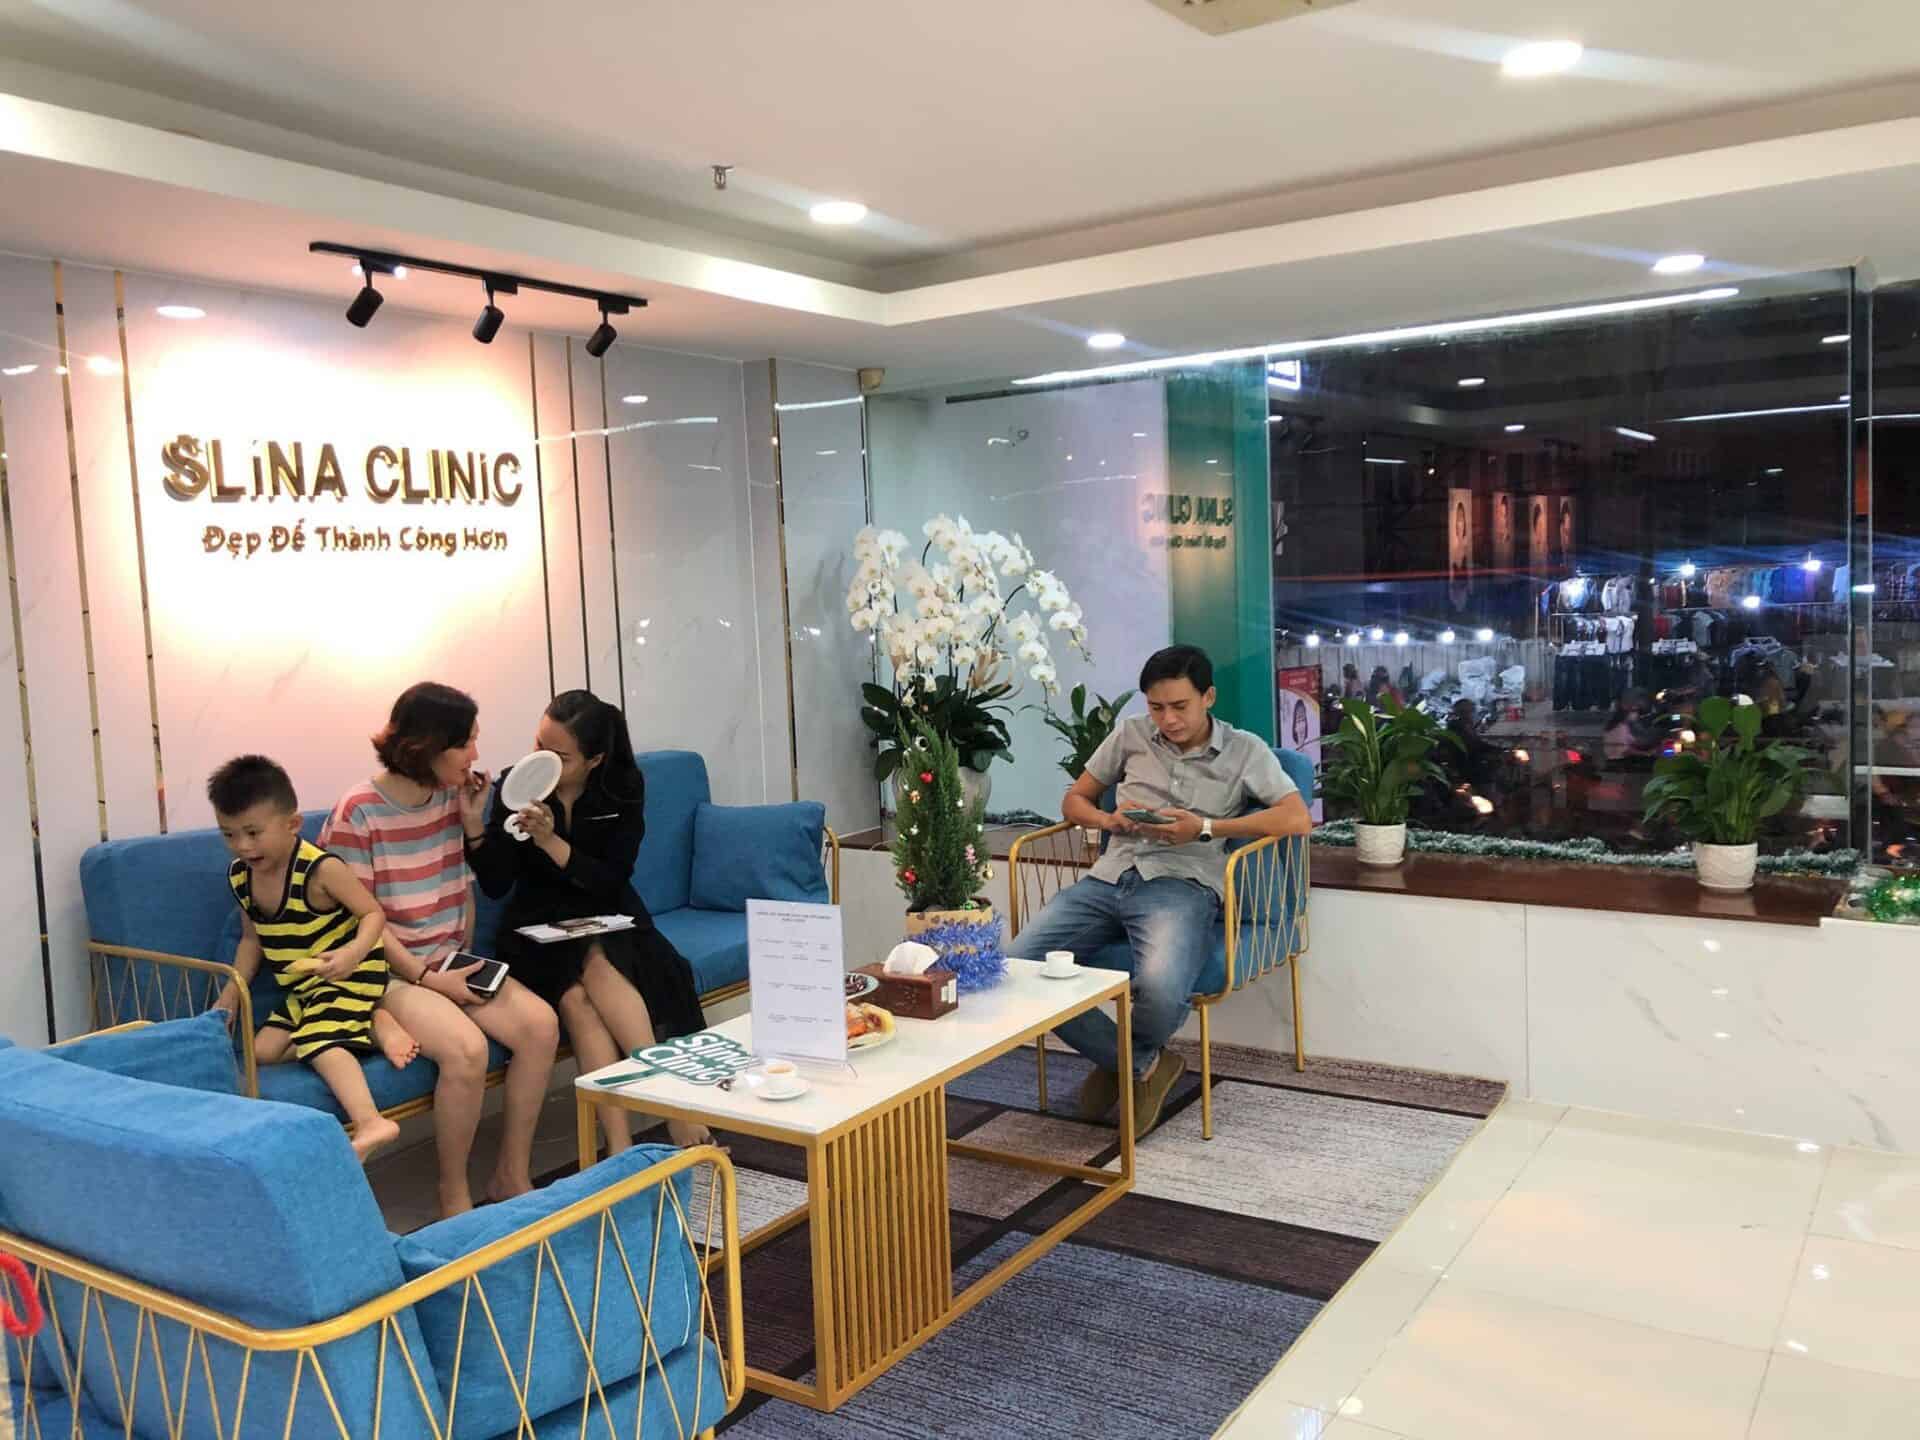 Bạn có thể tham khảo các gói dịch vụ trị nám tại Slina Clinic